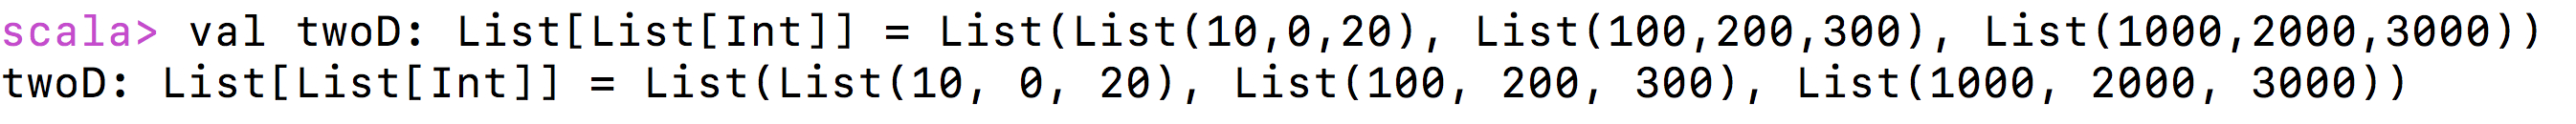 2-D List